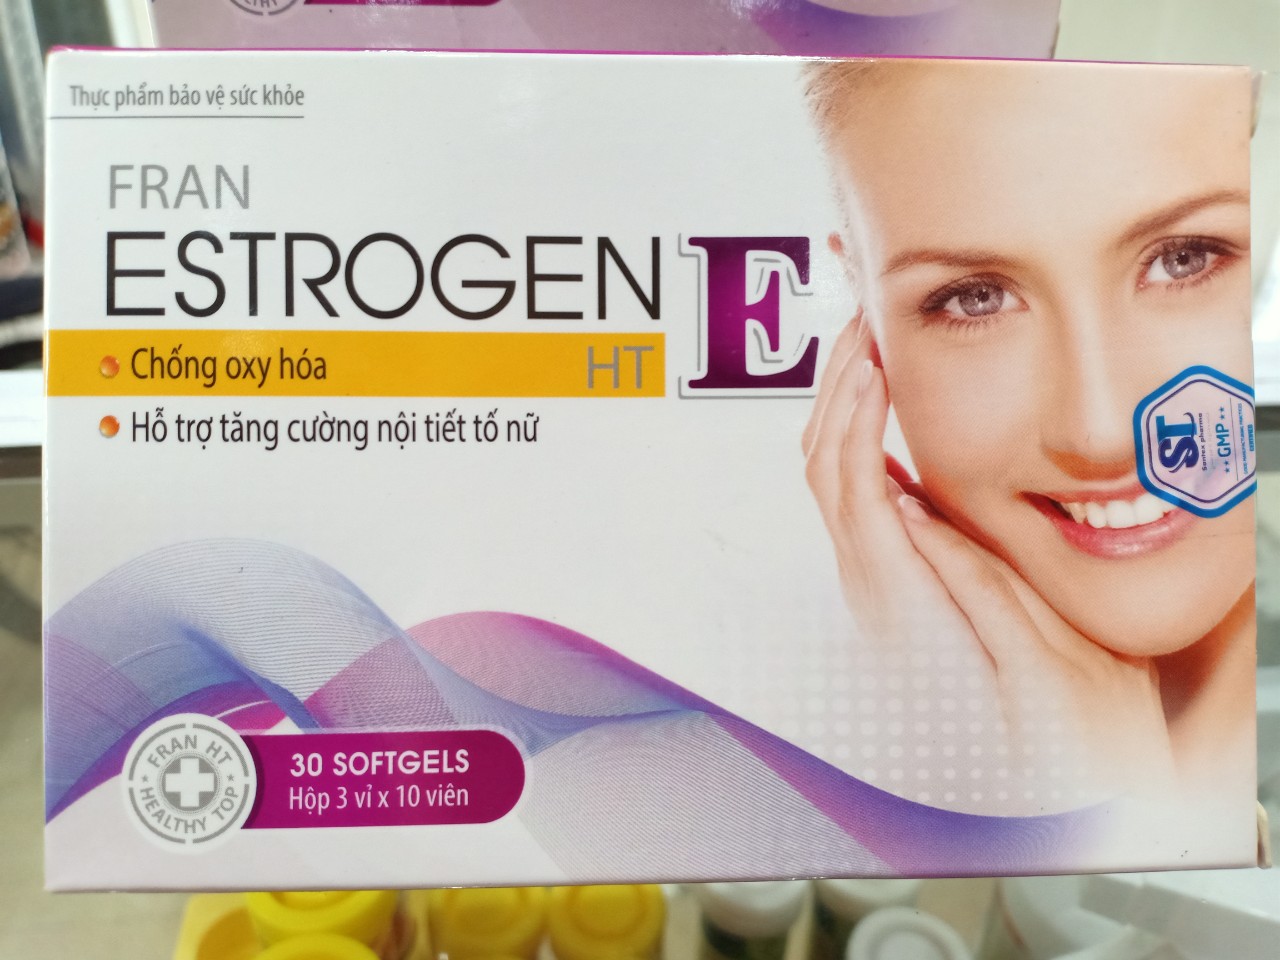 Viên uống đẹp da ESTROGEN E giúp chống oxy hóa, tăng cường nội tiết tố nữ